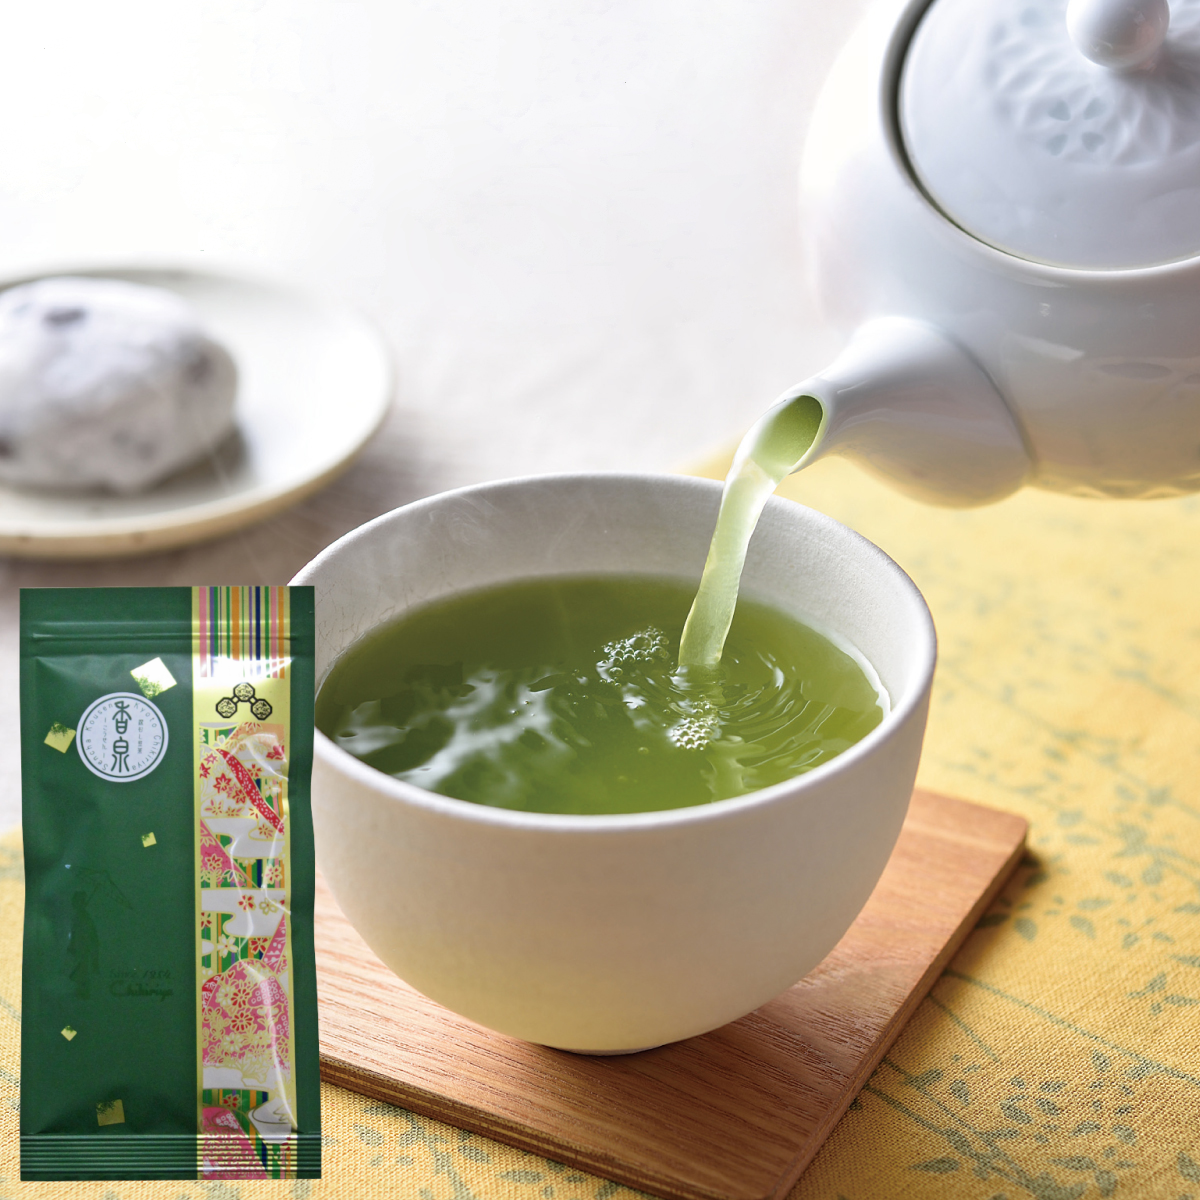 Fukamushi Sencha "Kousen" (Deep-steamed Japanese green tea) - 100g tea leaves